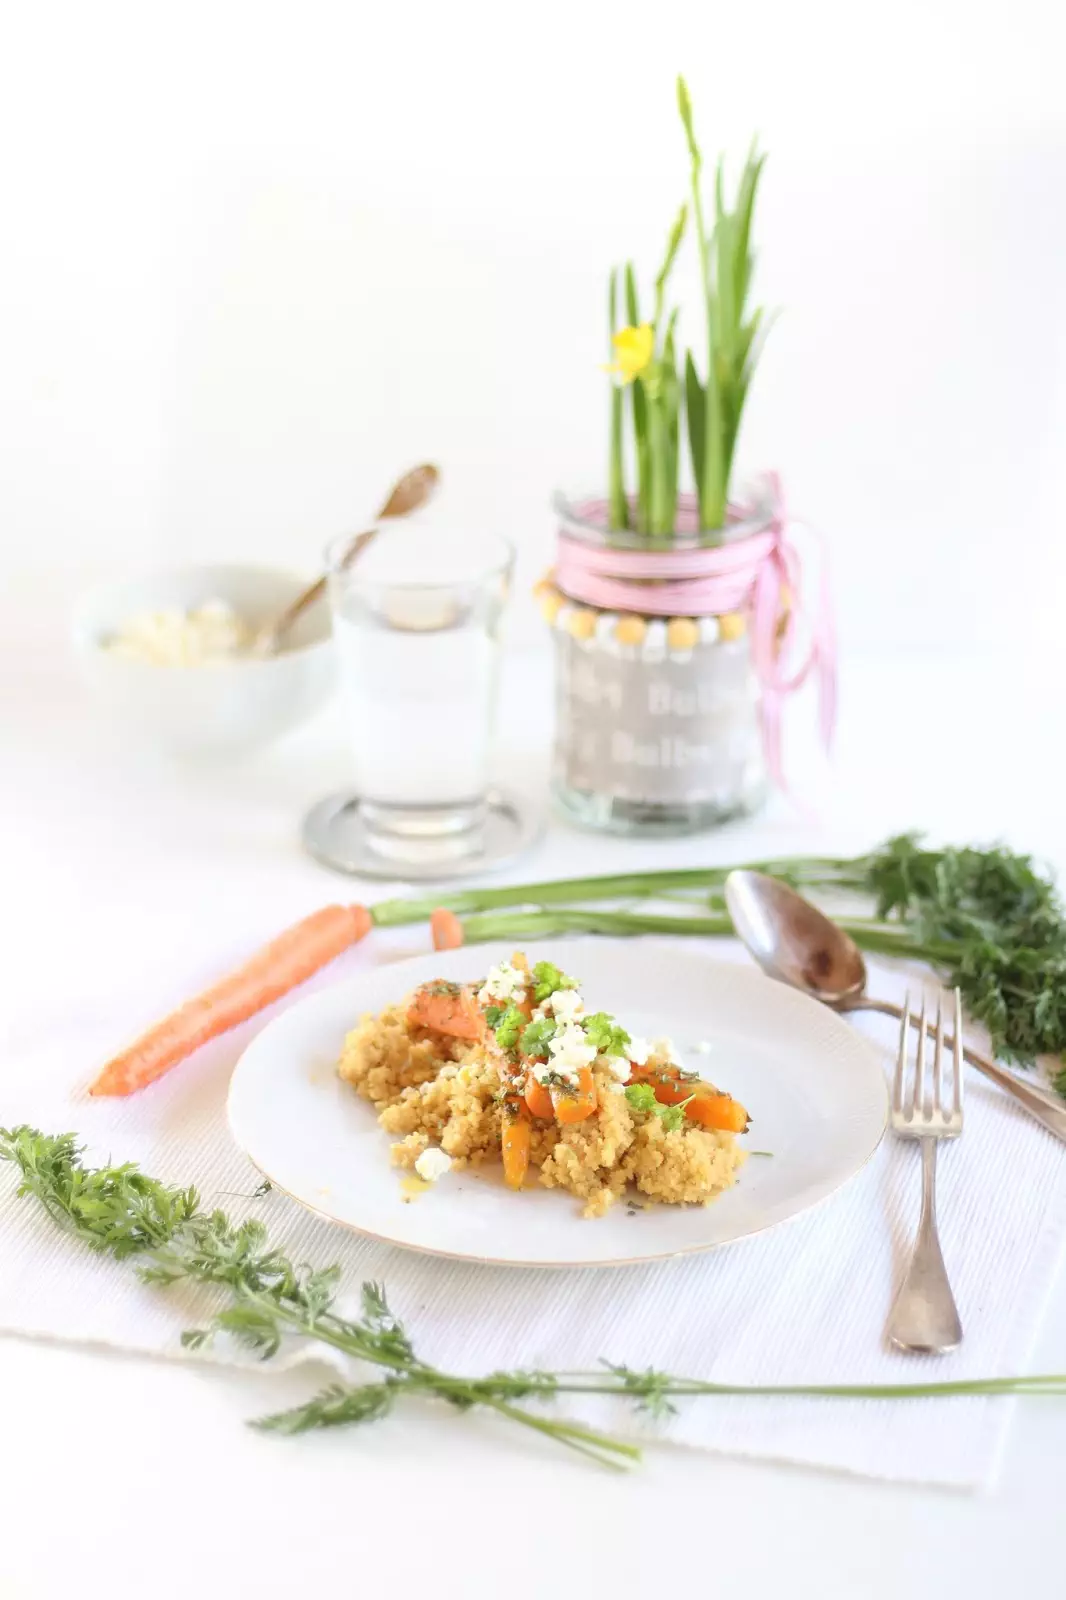 Orangen Couscous mit Möhren - das Rezept findet ihr auf dem Blog